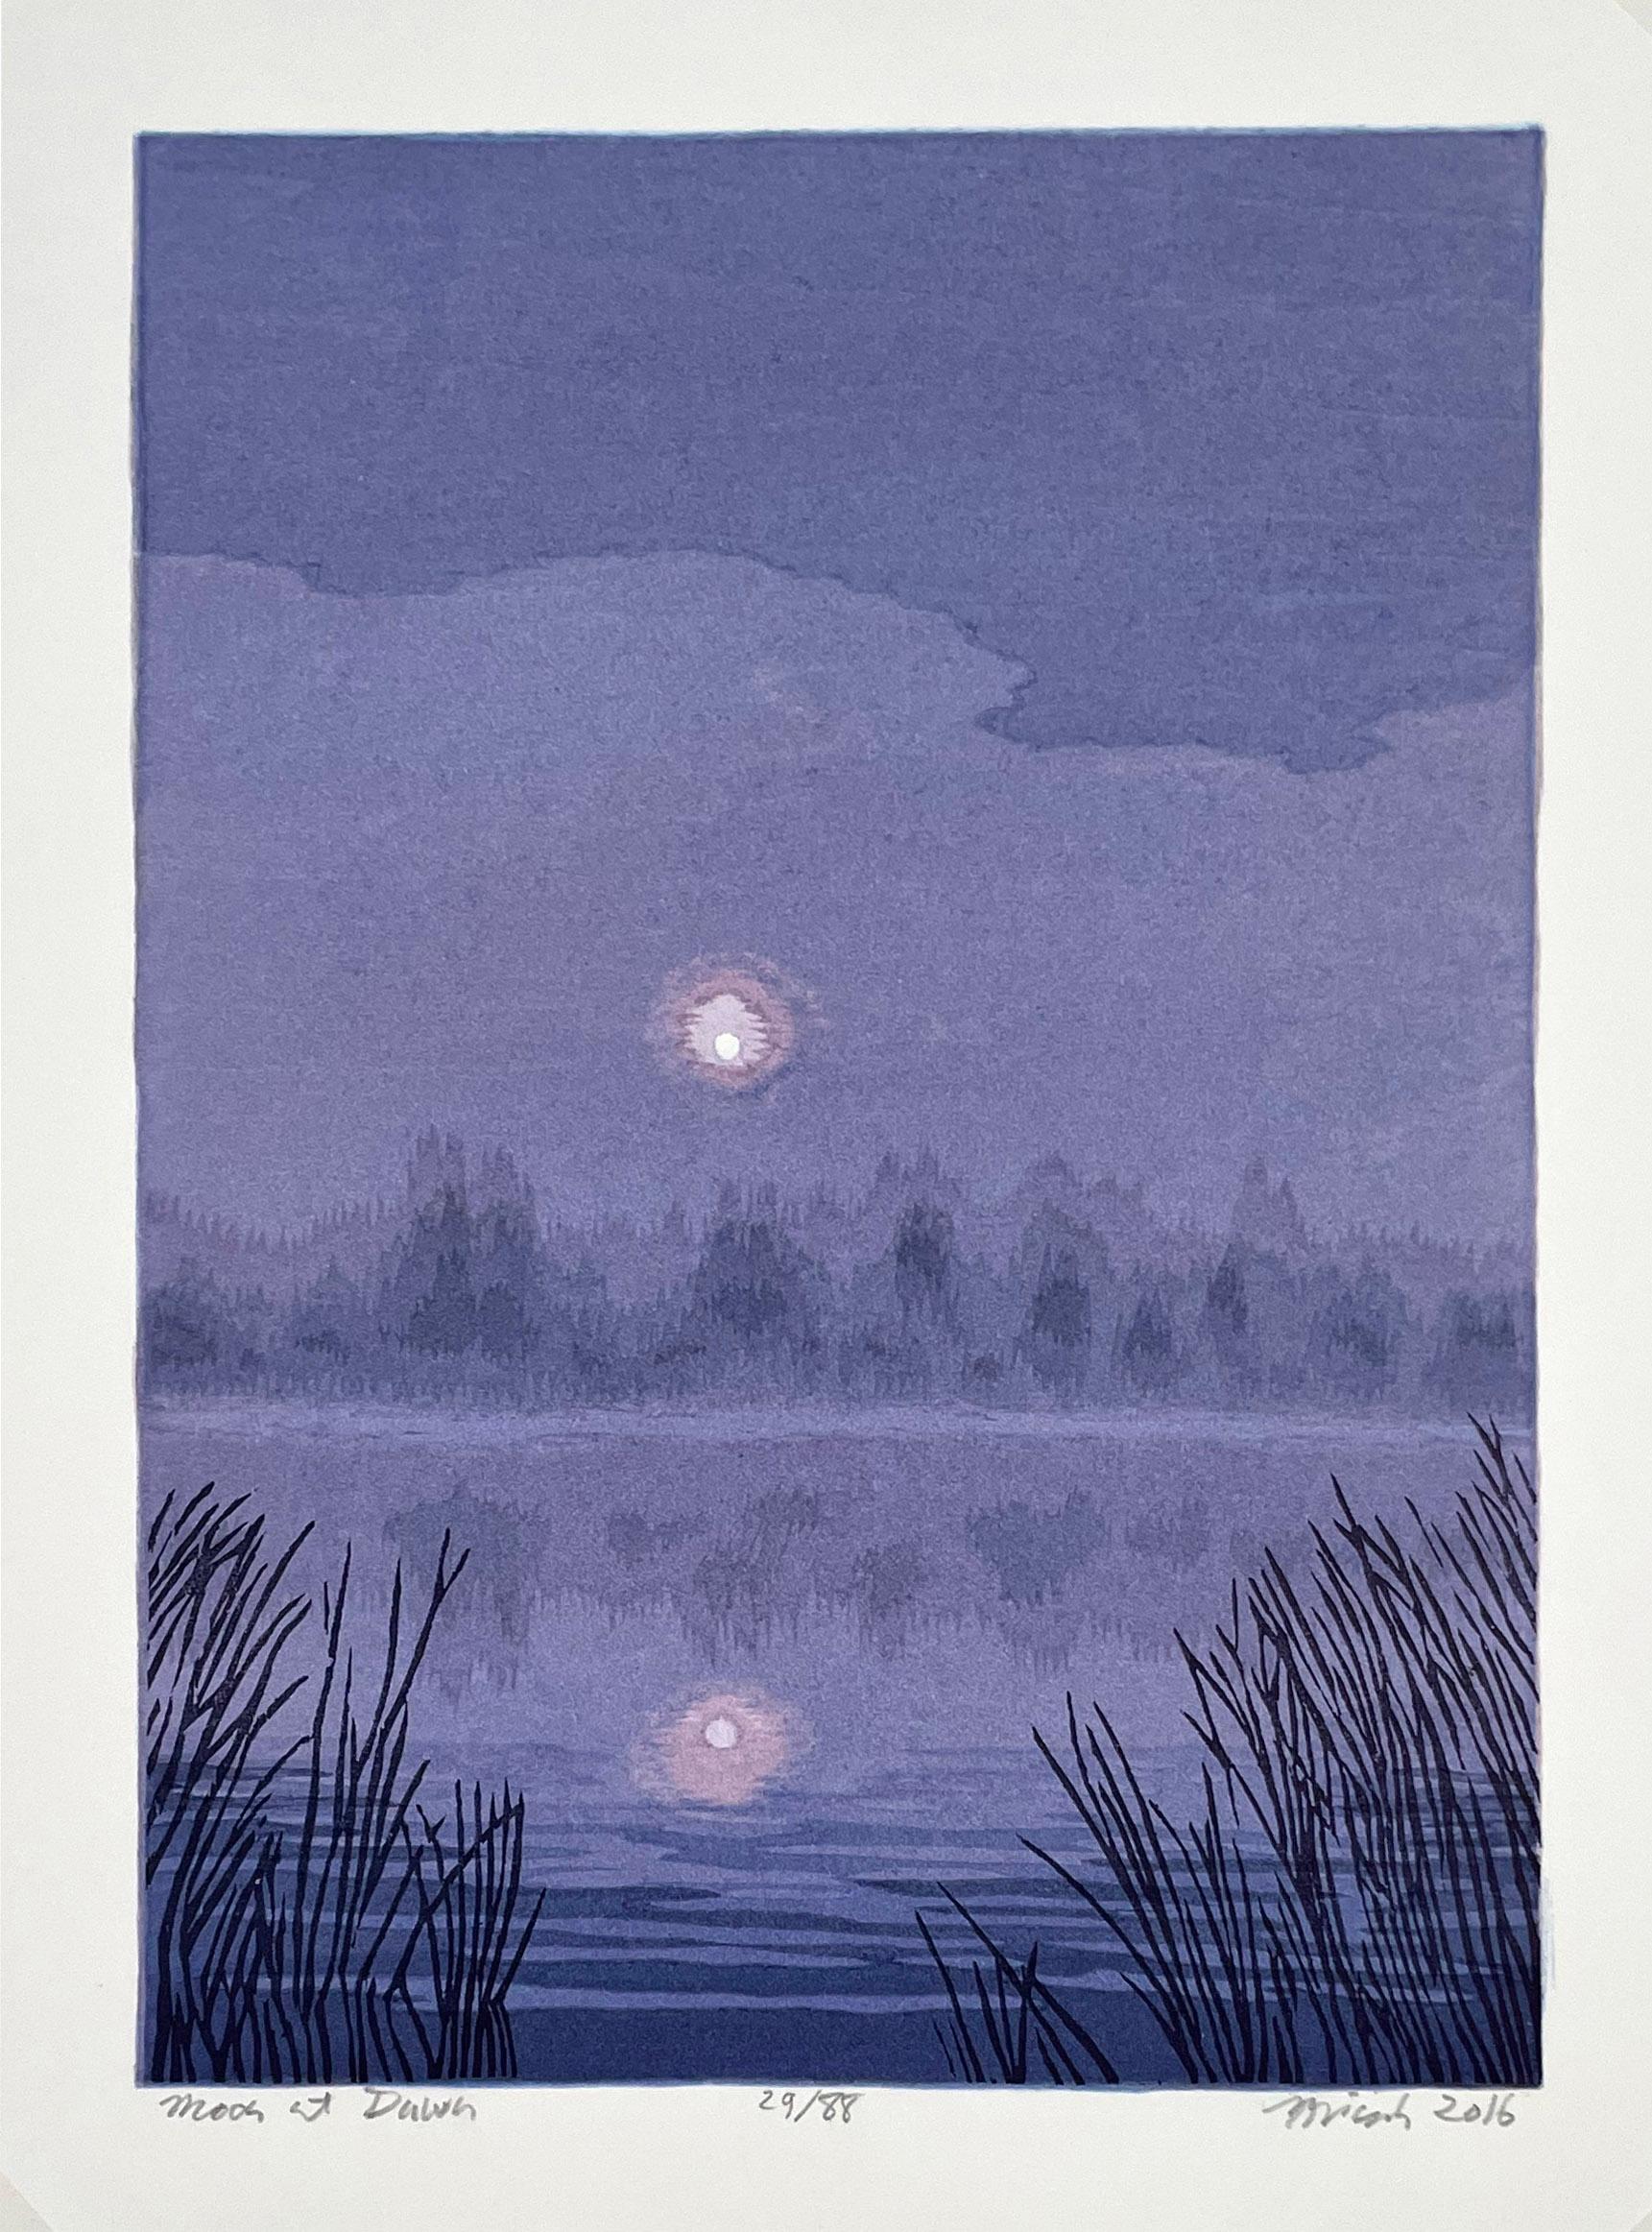 Mond in der Morgendämmerung – Print von Micah Schwaberow